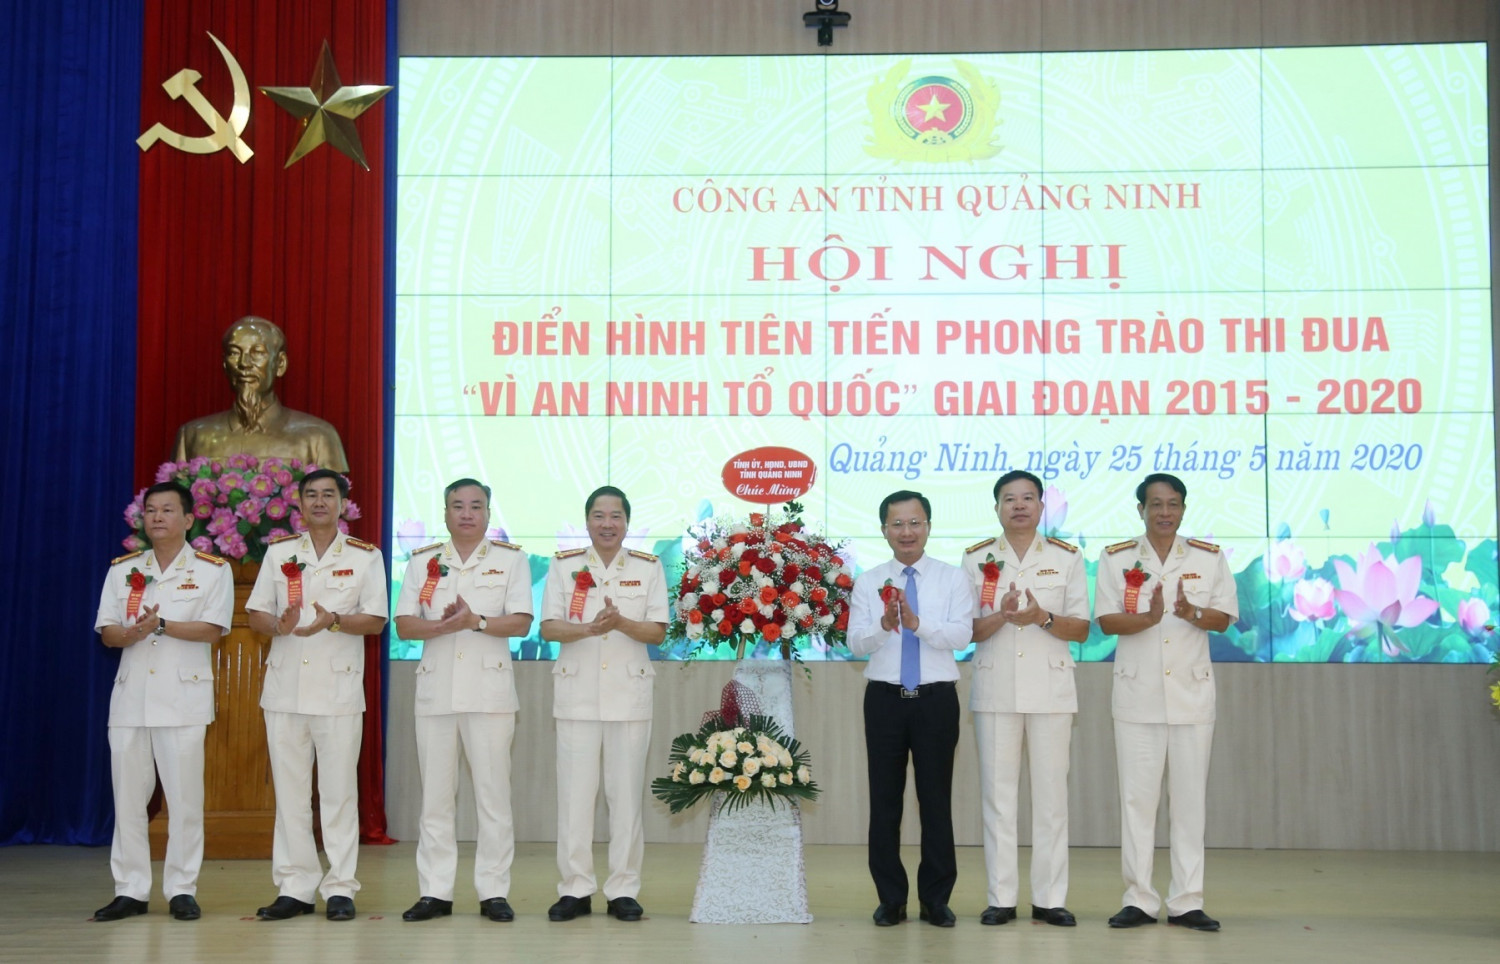 Đồng chí Cao Tường Huy, Phó Chủ tịch UBND tỉnh Quảng Ninh chúc mừng những thành tích đạt được của Công an Quảng Ninh trong 5 năm qua.